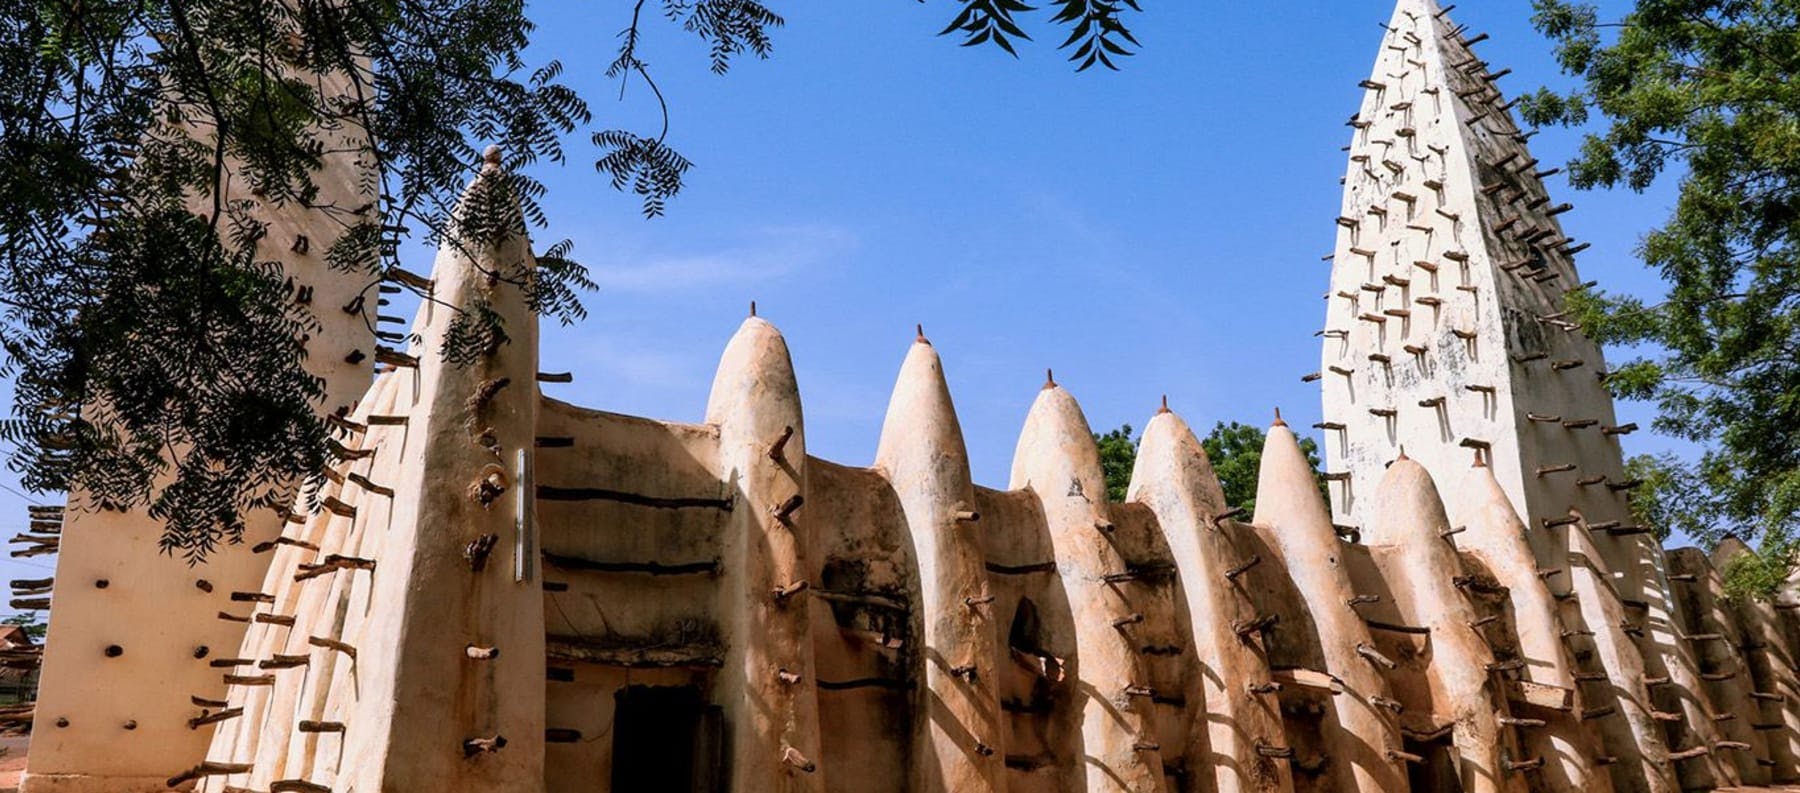 Grand Mosque of Bobo-Dioulasso, Burkina Faso.